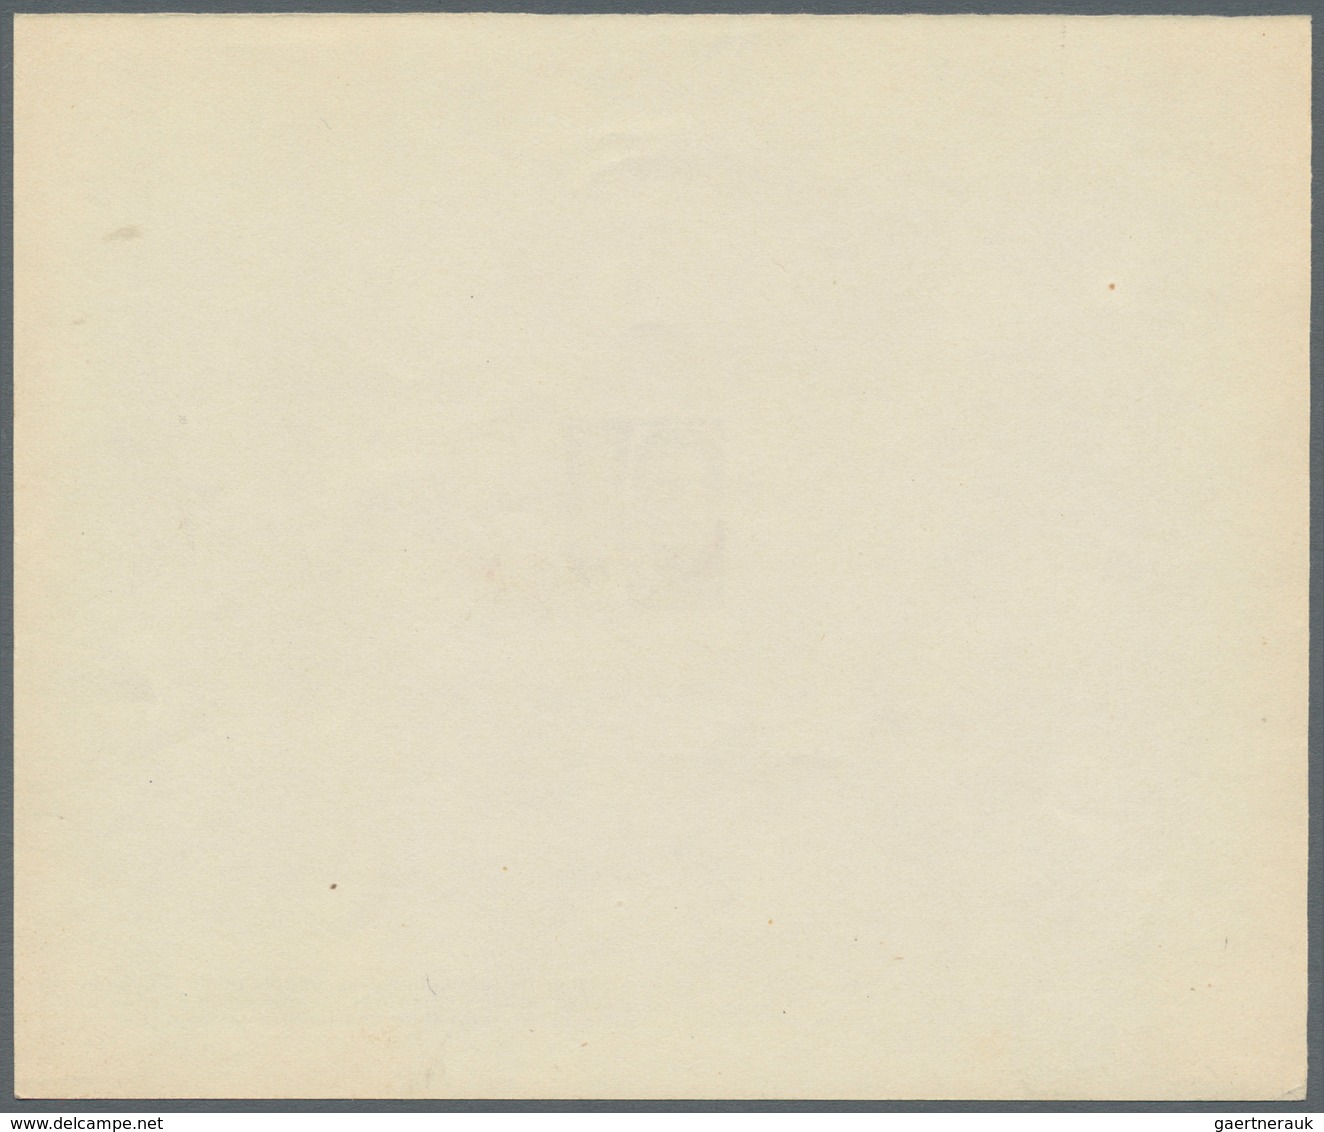 Französische Zone - Baden: 1947, 2 Pfg. bis 1 M. Freimarken als Ministerblocks auf Kartonpapier mit